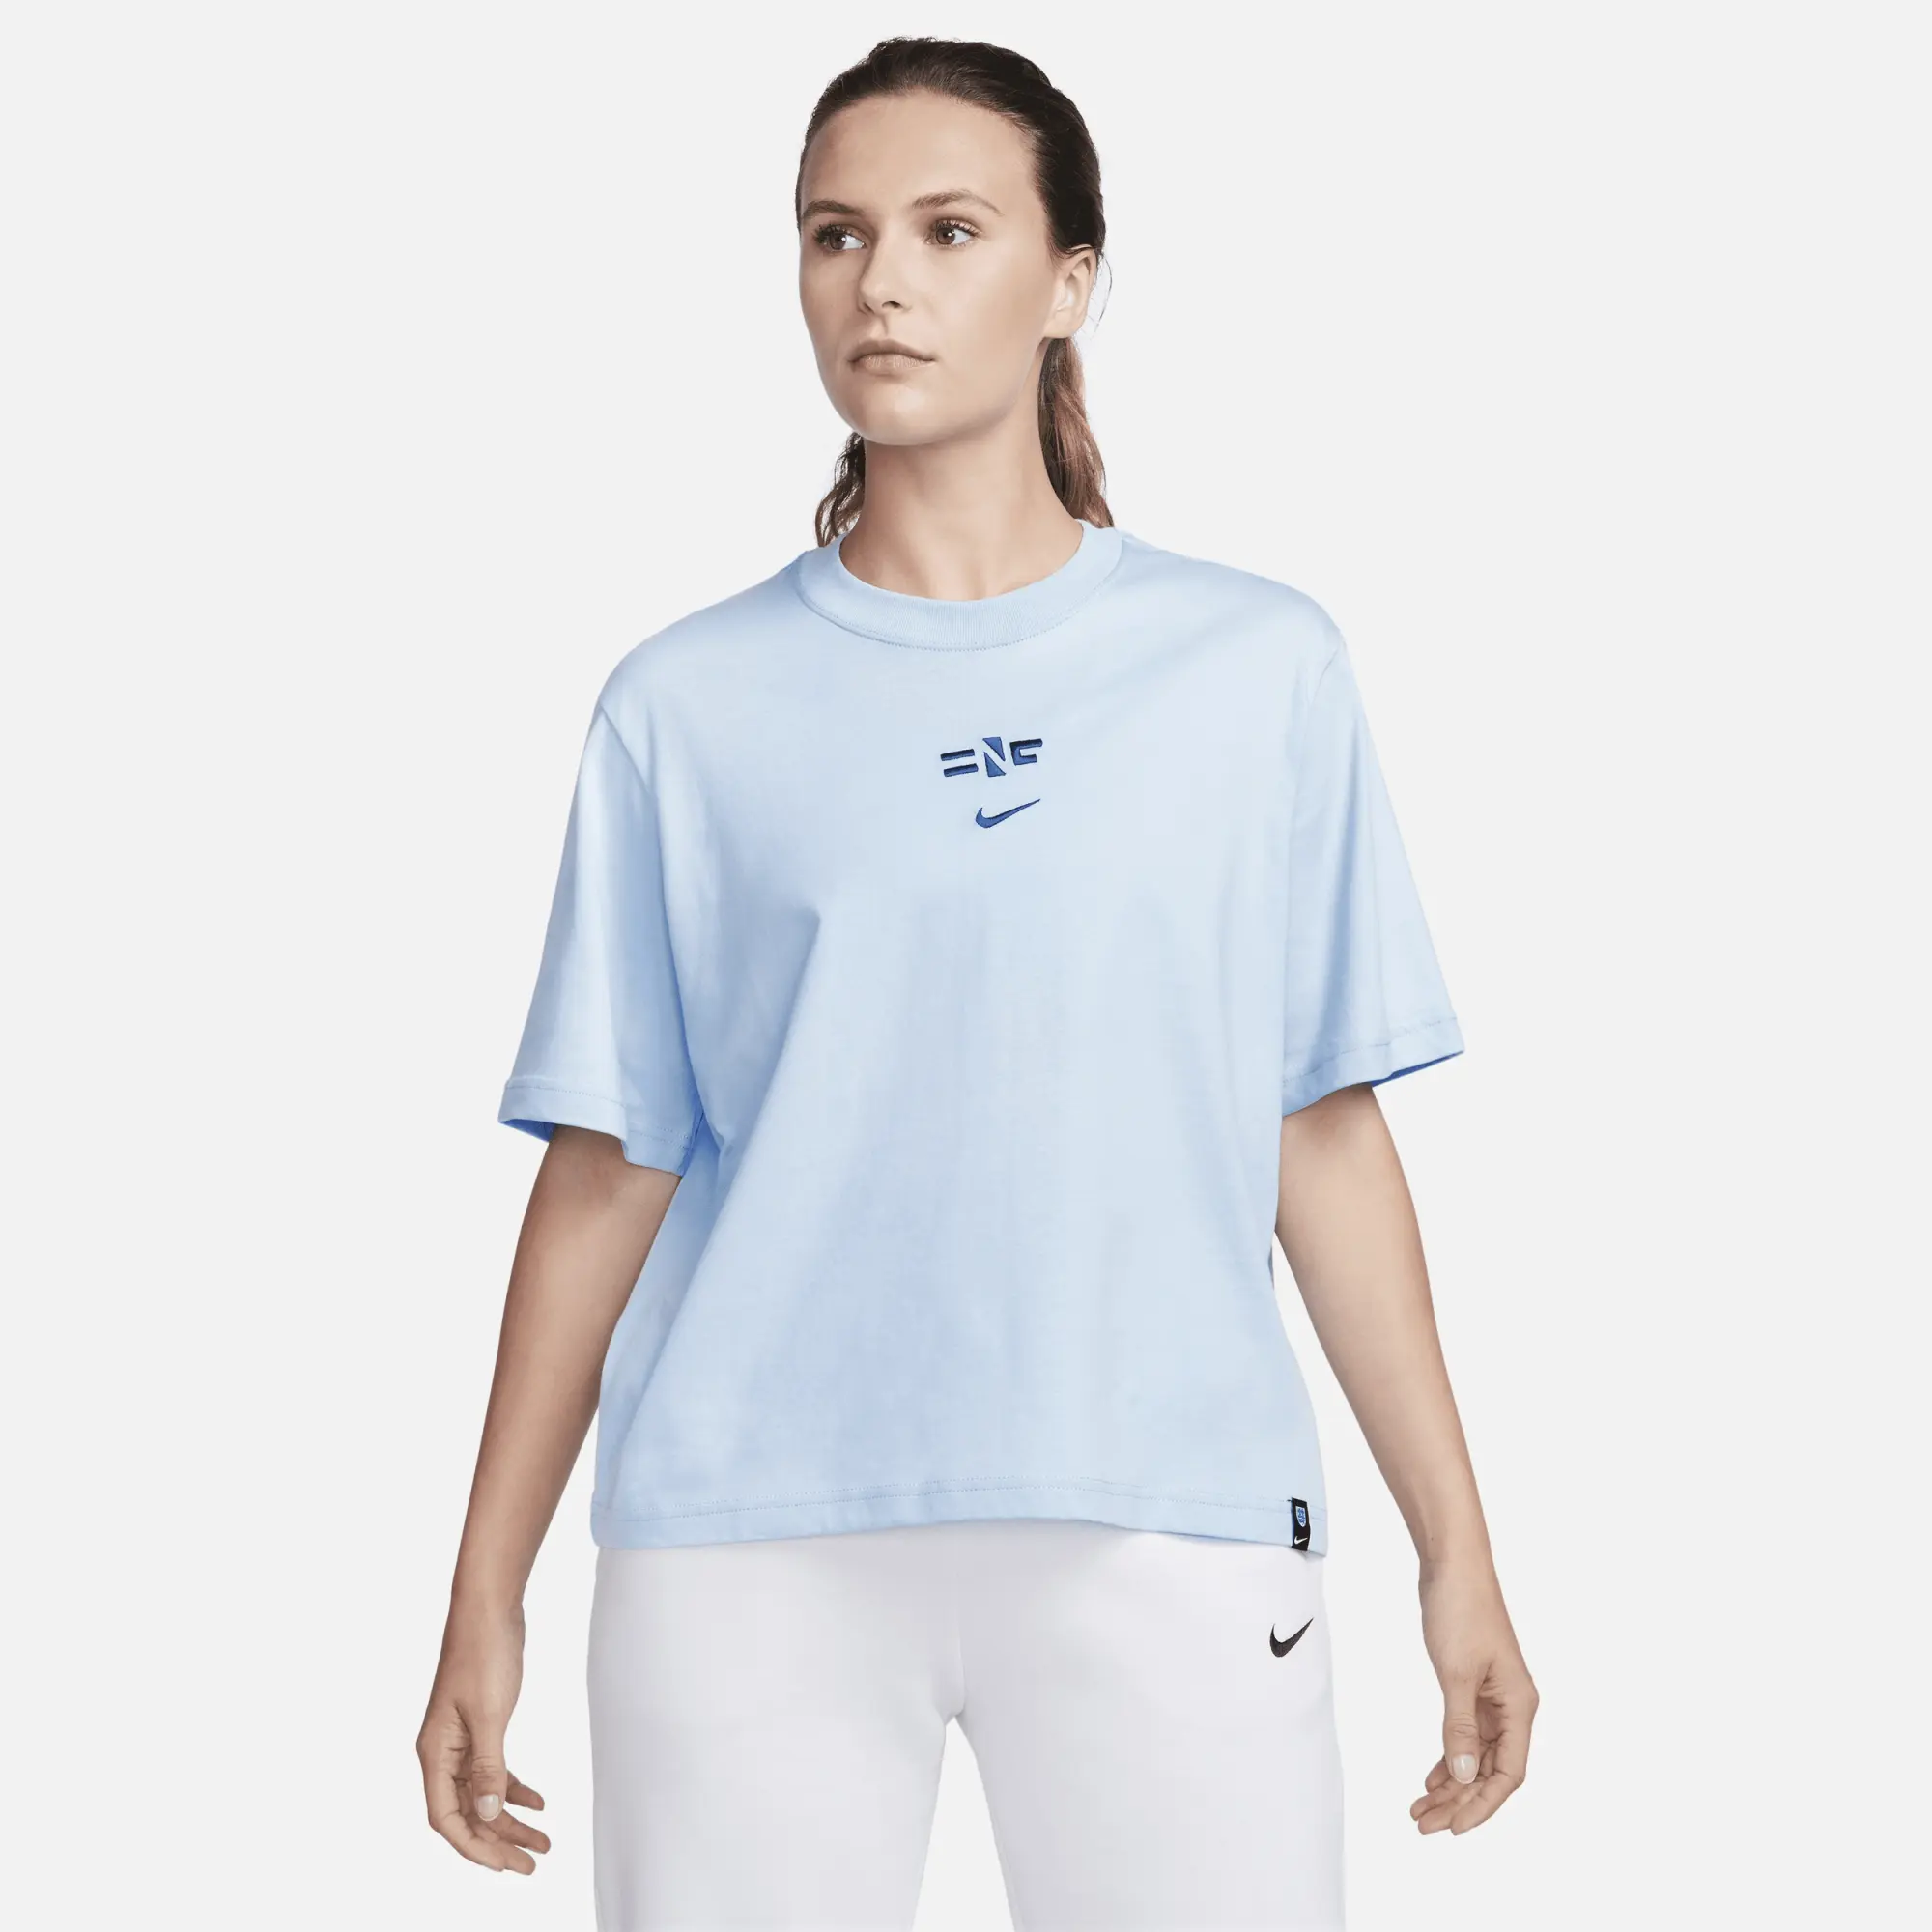 England Women's Nike Fearless T-Shirt - Blue - Womens